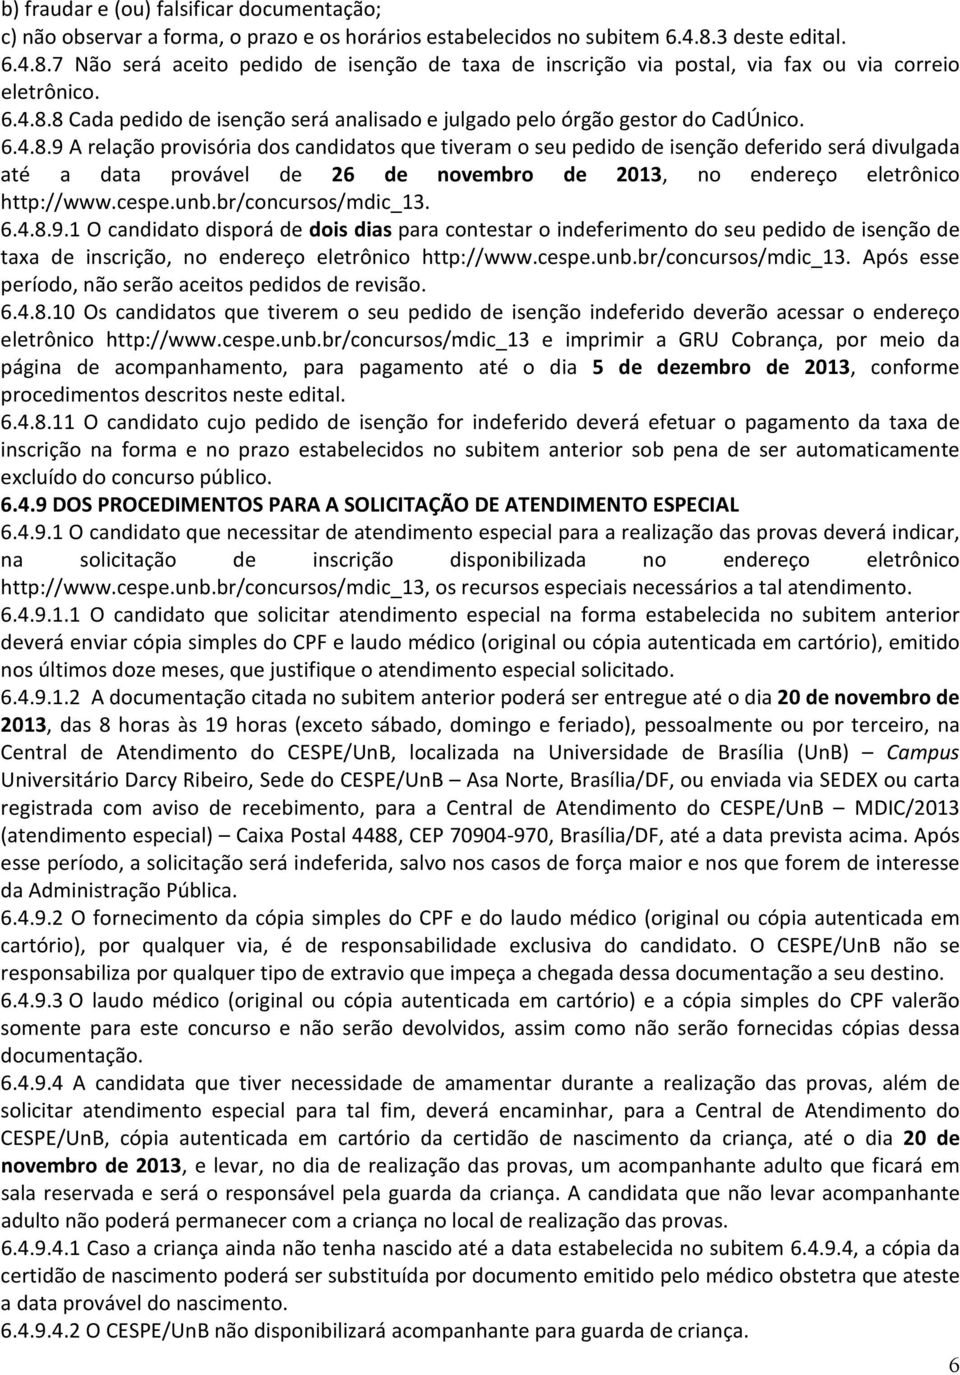 6.4.8.9 A relação provisória dos candidatos que tiveram o seu pedido de isenção deferido será divulgada até a data provável de 26 de novembro de 2013, no endereço eletrônico http://www.cespe.unb.